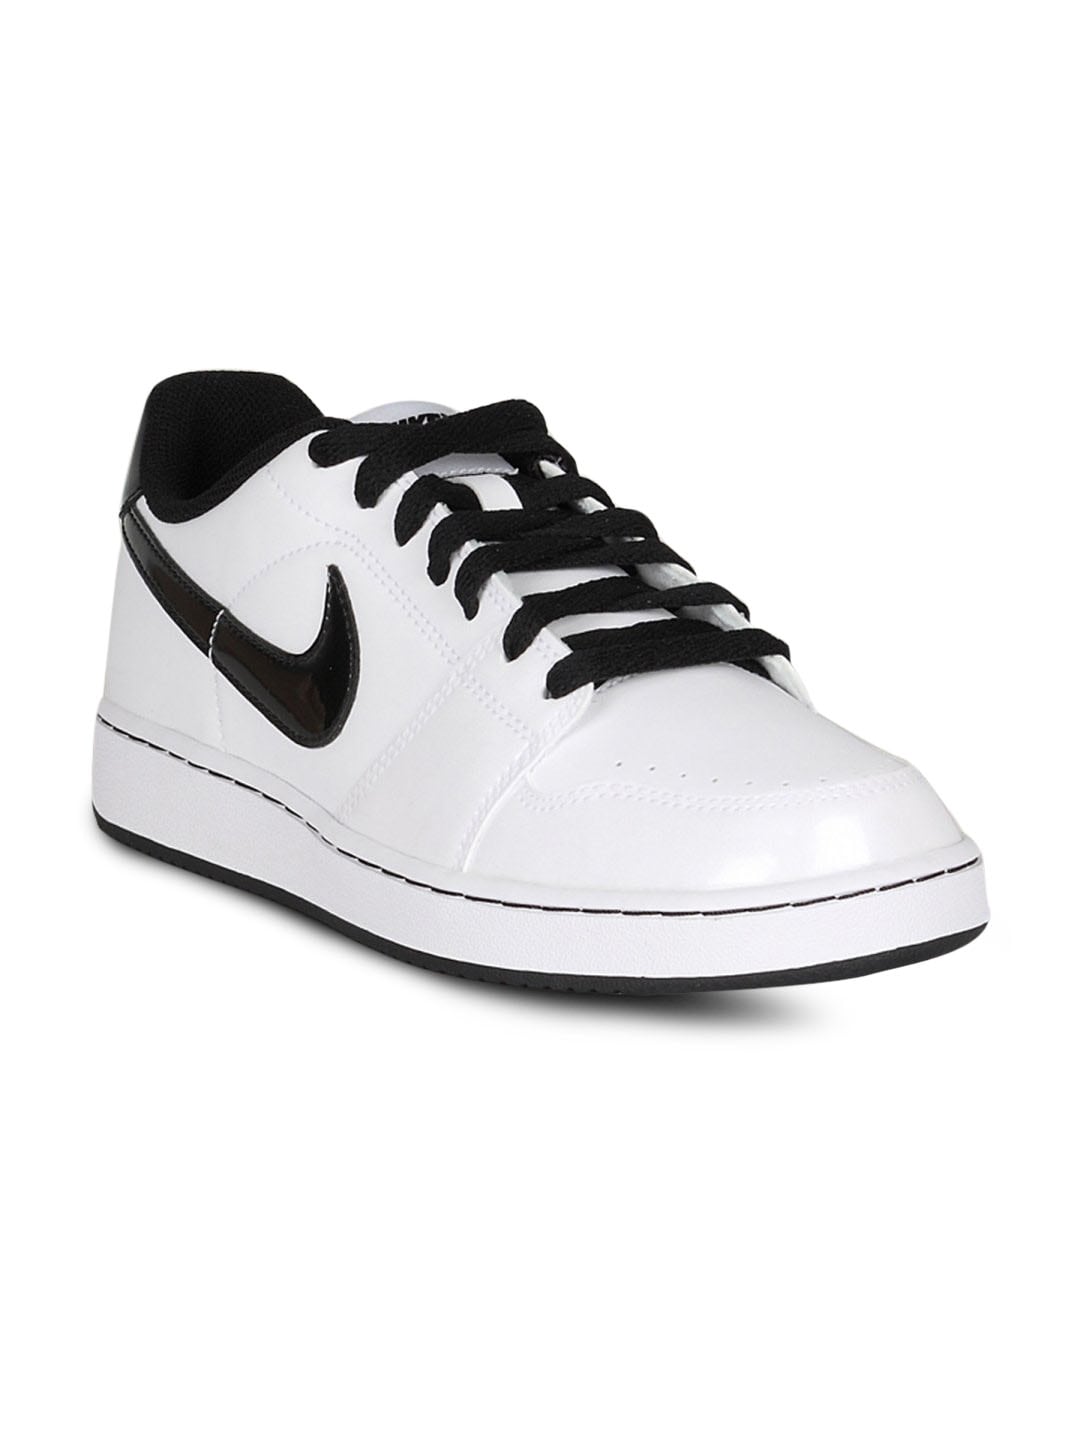 Nike Men's Backboard White Black Shoe